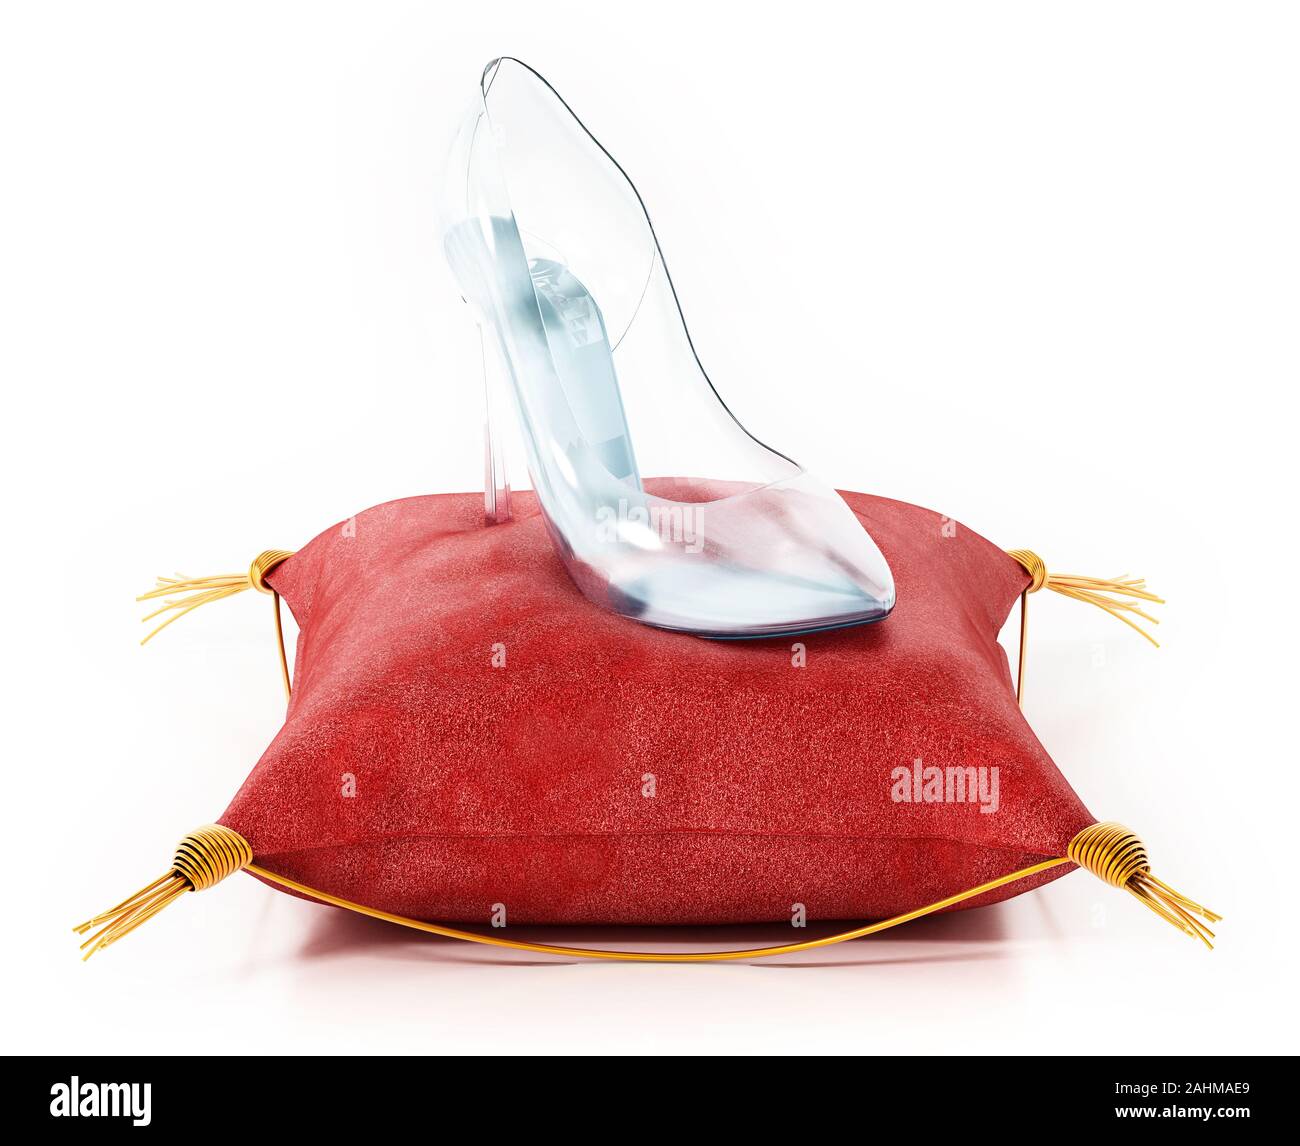 Single glass shoe standing on red velvet cushion. 3D illustration. Stock Photo